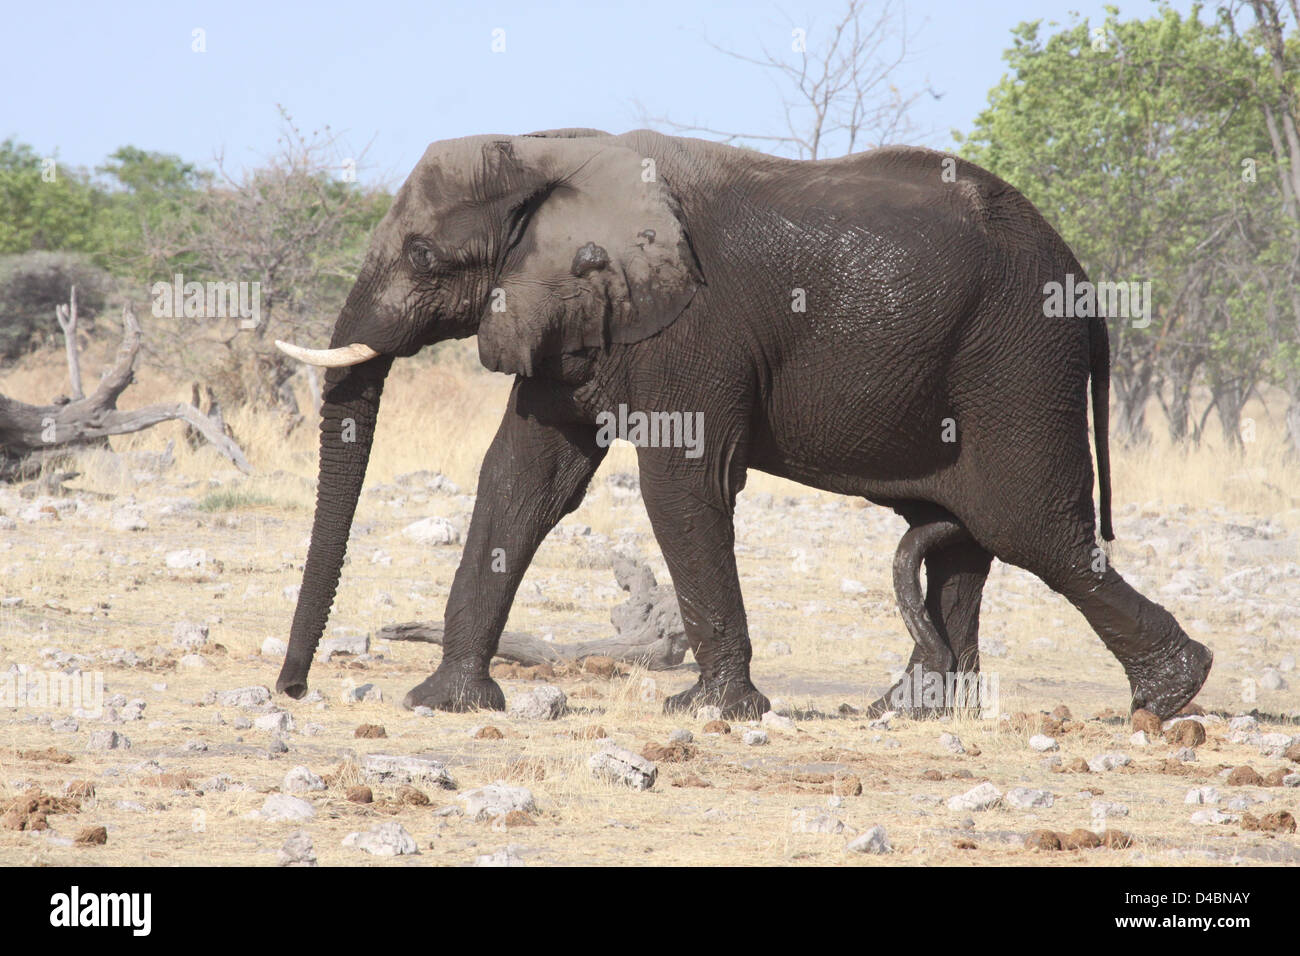 Male Elephant in breeding condition at waterhole, Etosha National Park, Namibia Stock Photo